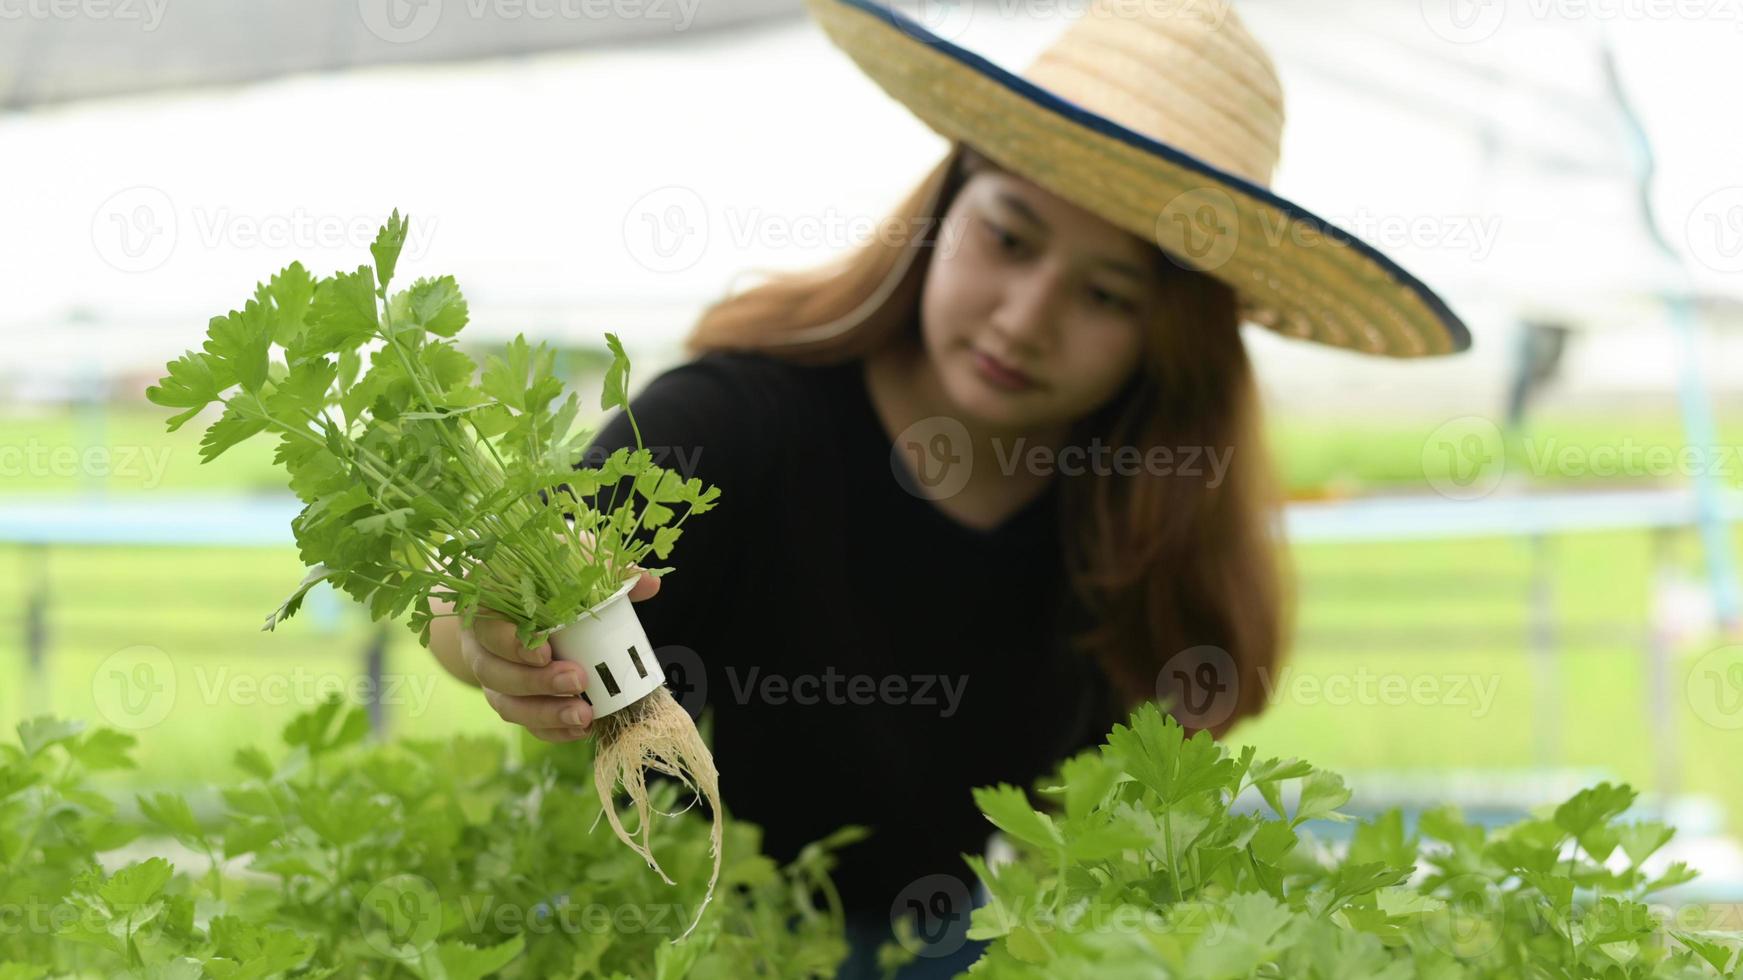 jeunes agricultrices asiatiques inspectant des parcelles de légumes hydroponiques en serre, légumes biologiques, ferme intelligente. photo